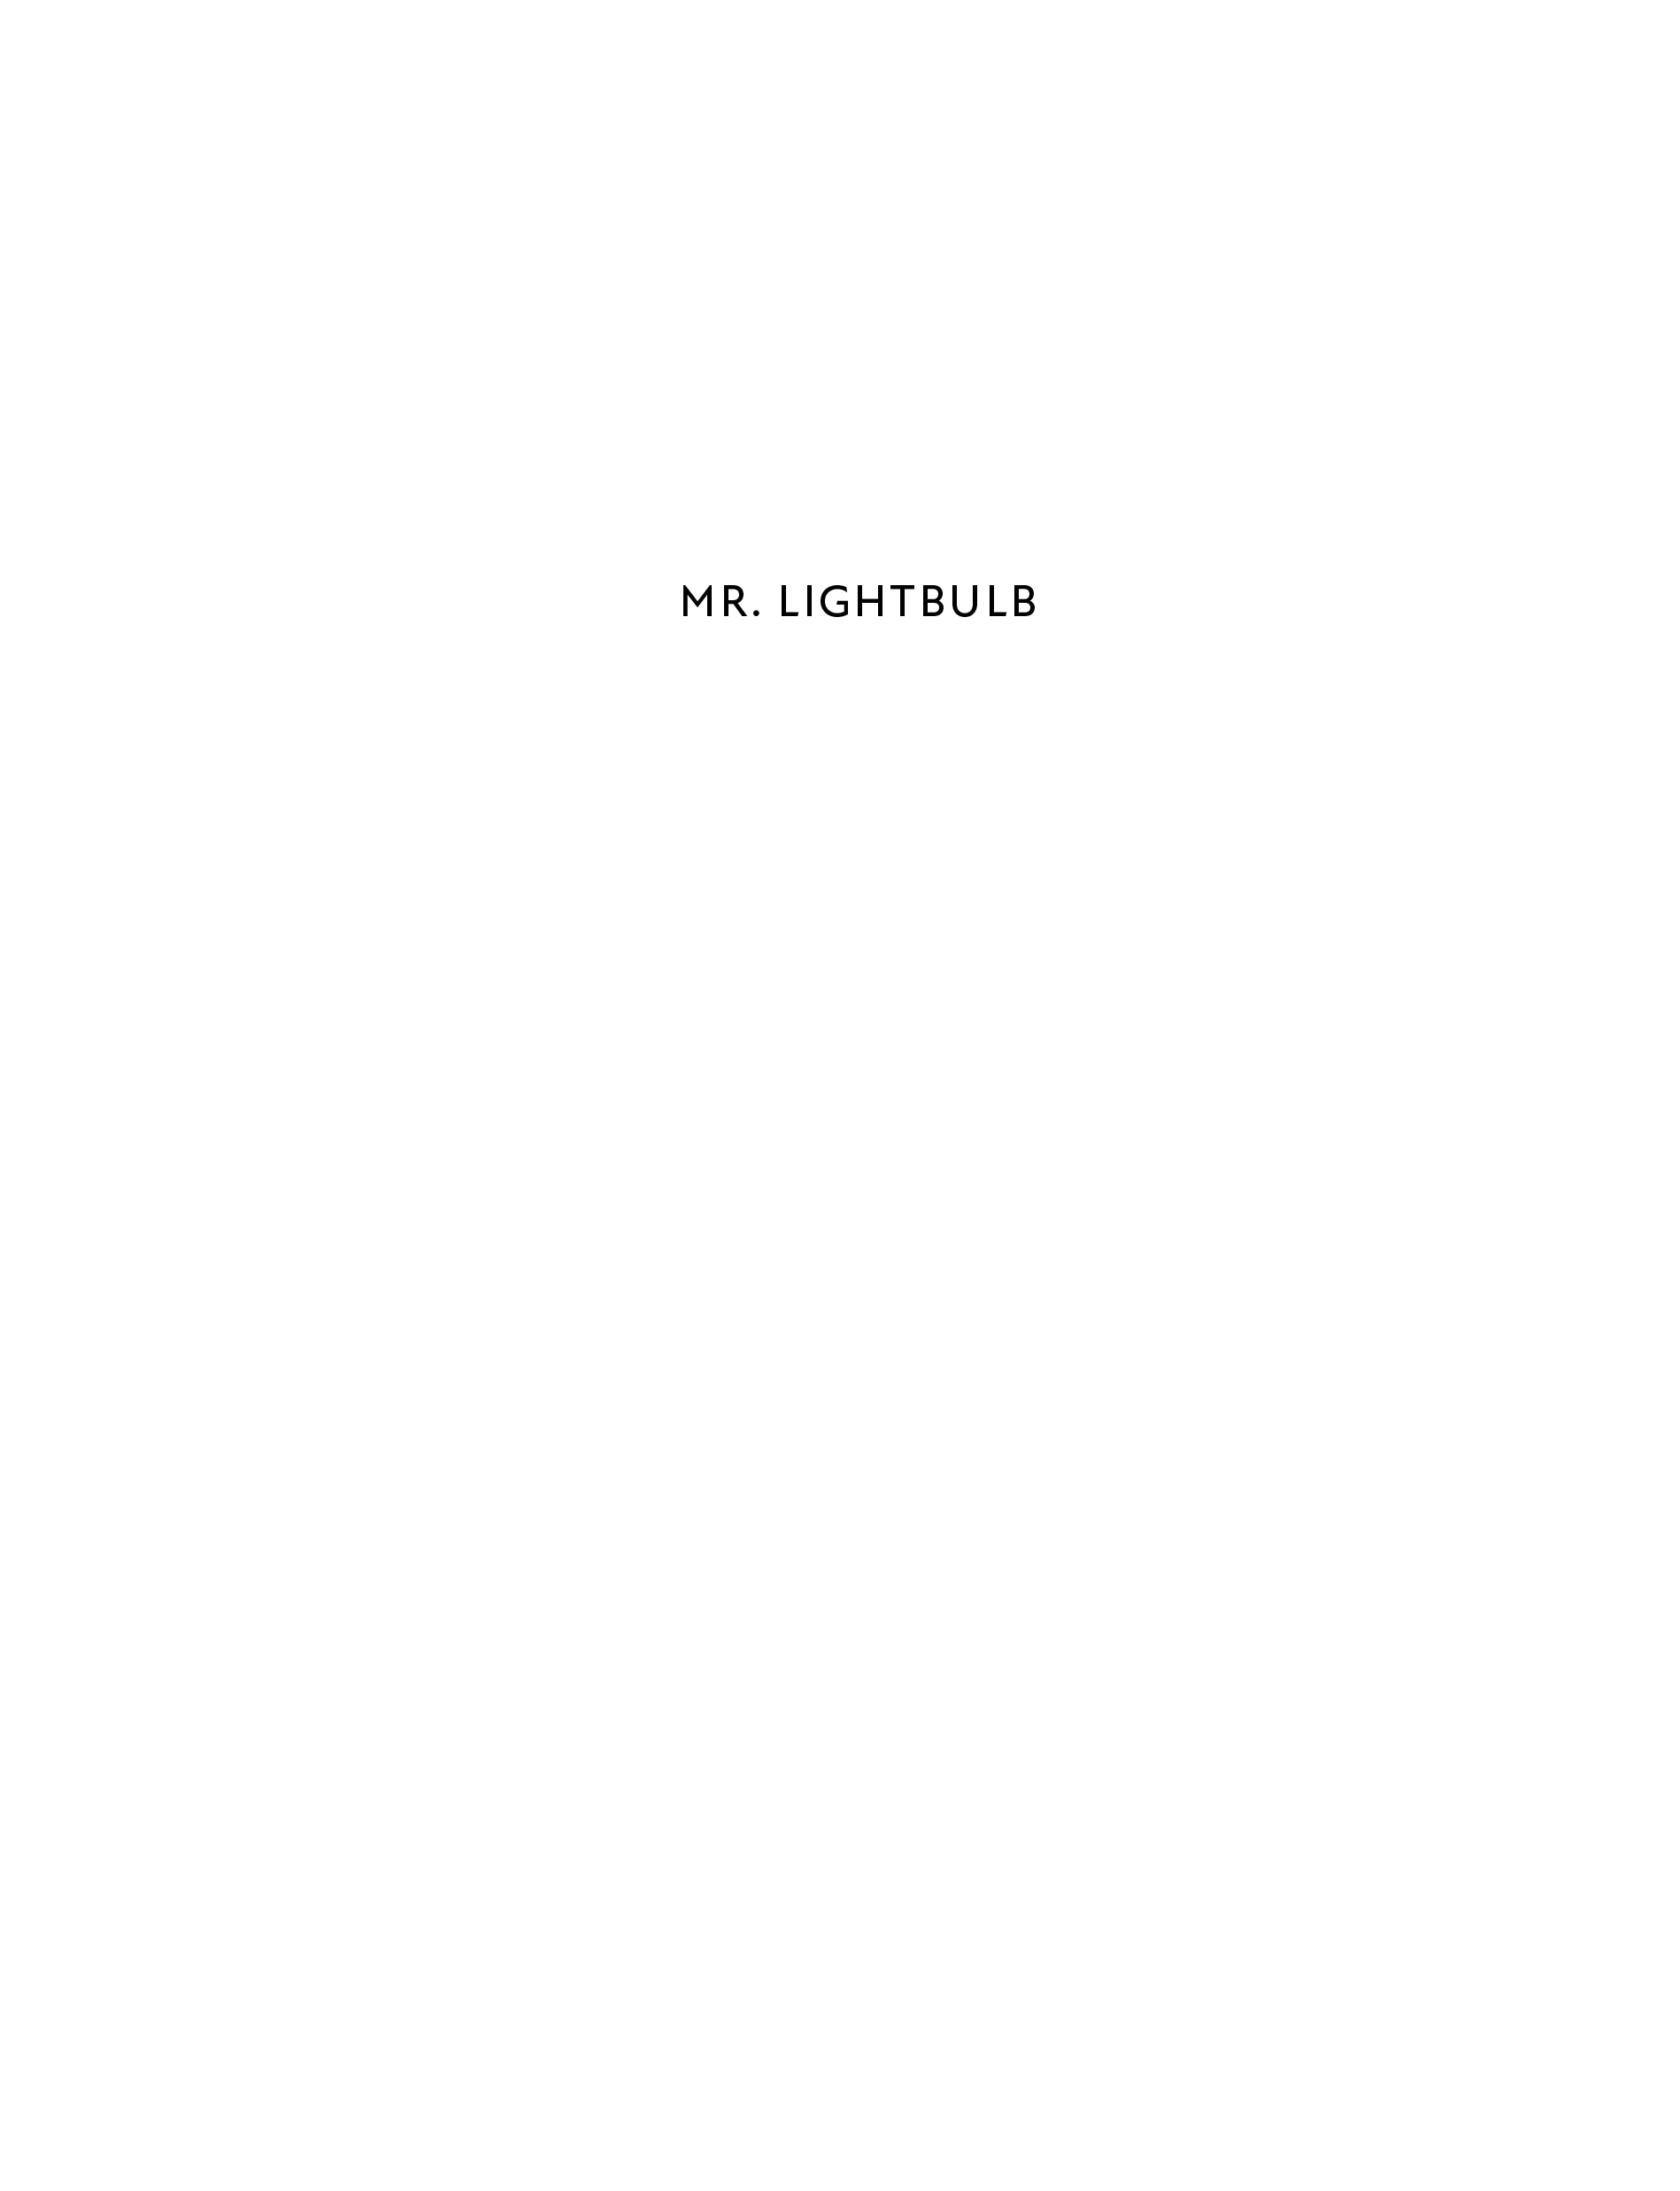 Read online Mr. Lightbulb comic -  Issue # TPB (Part 1) - 8